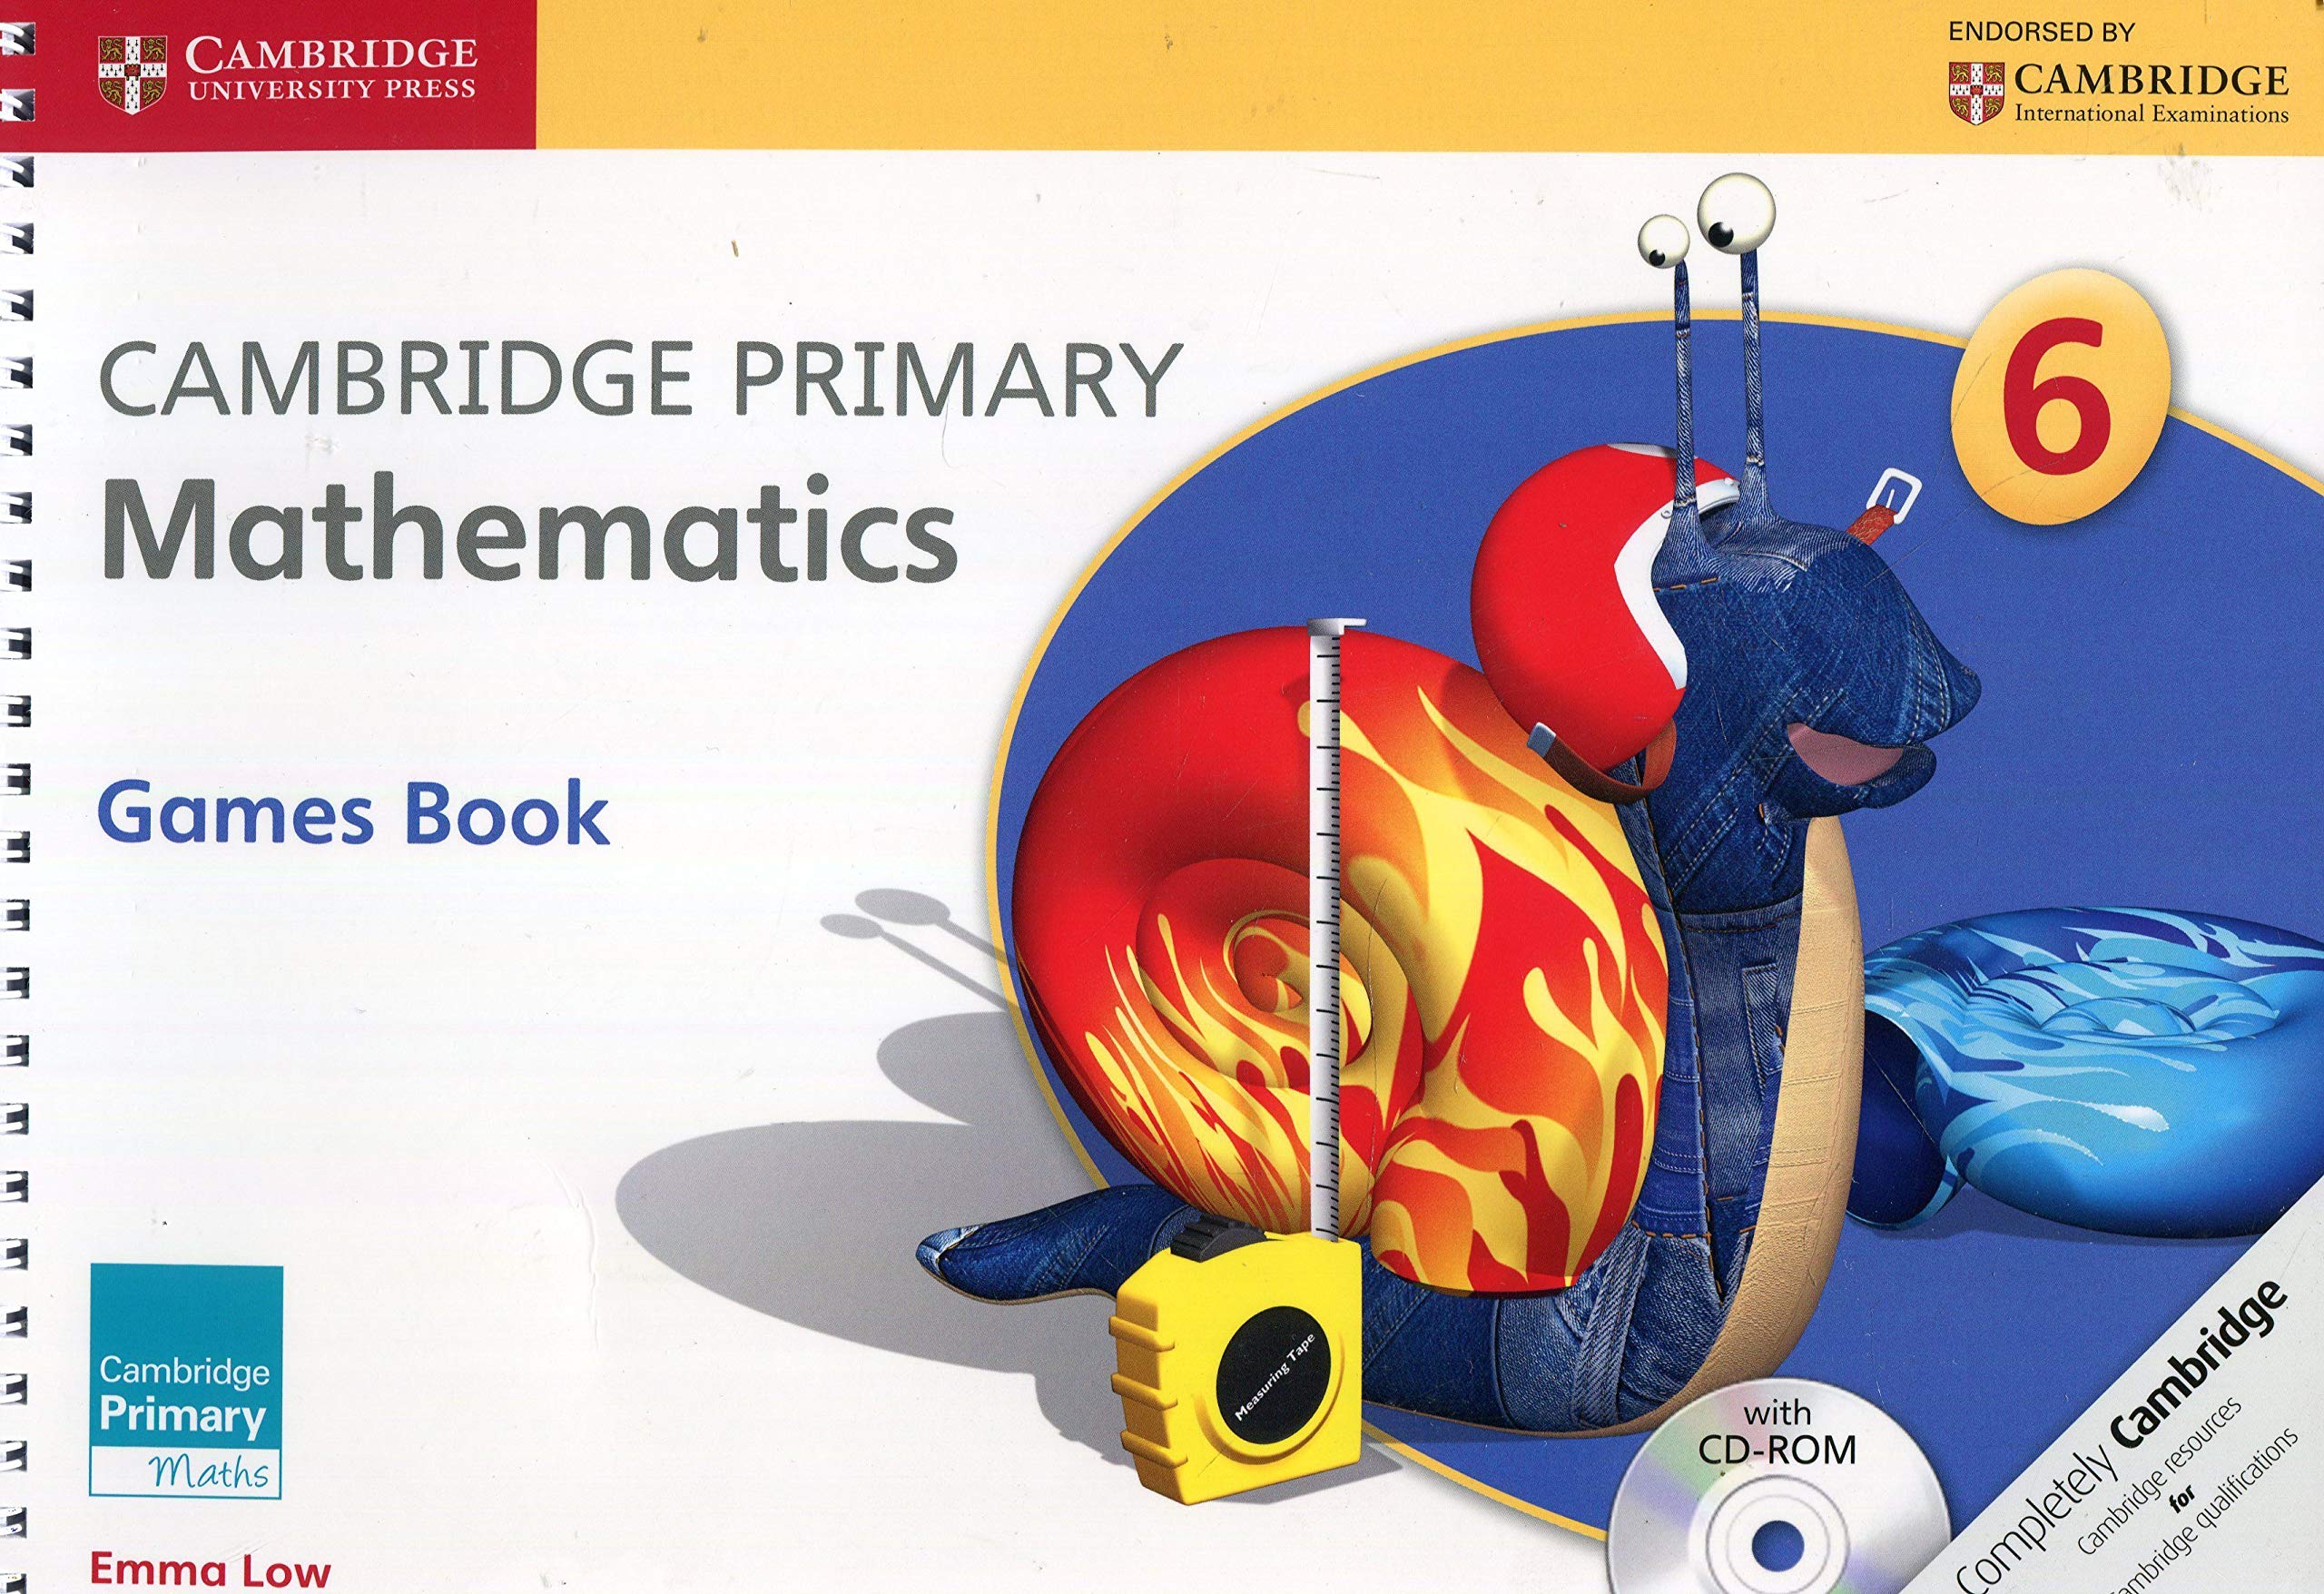 Cambridge mathematics. Cambridge games. Cambridge Primary Math. Cambridge Math books. Cambridge Primary учебники.